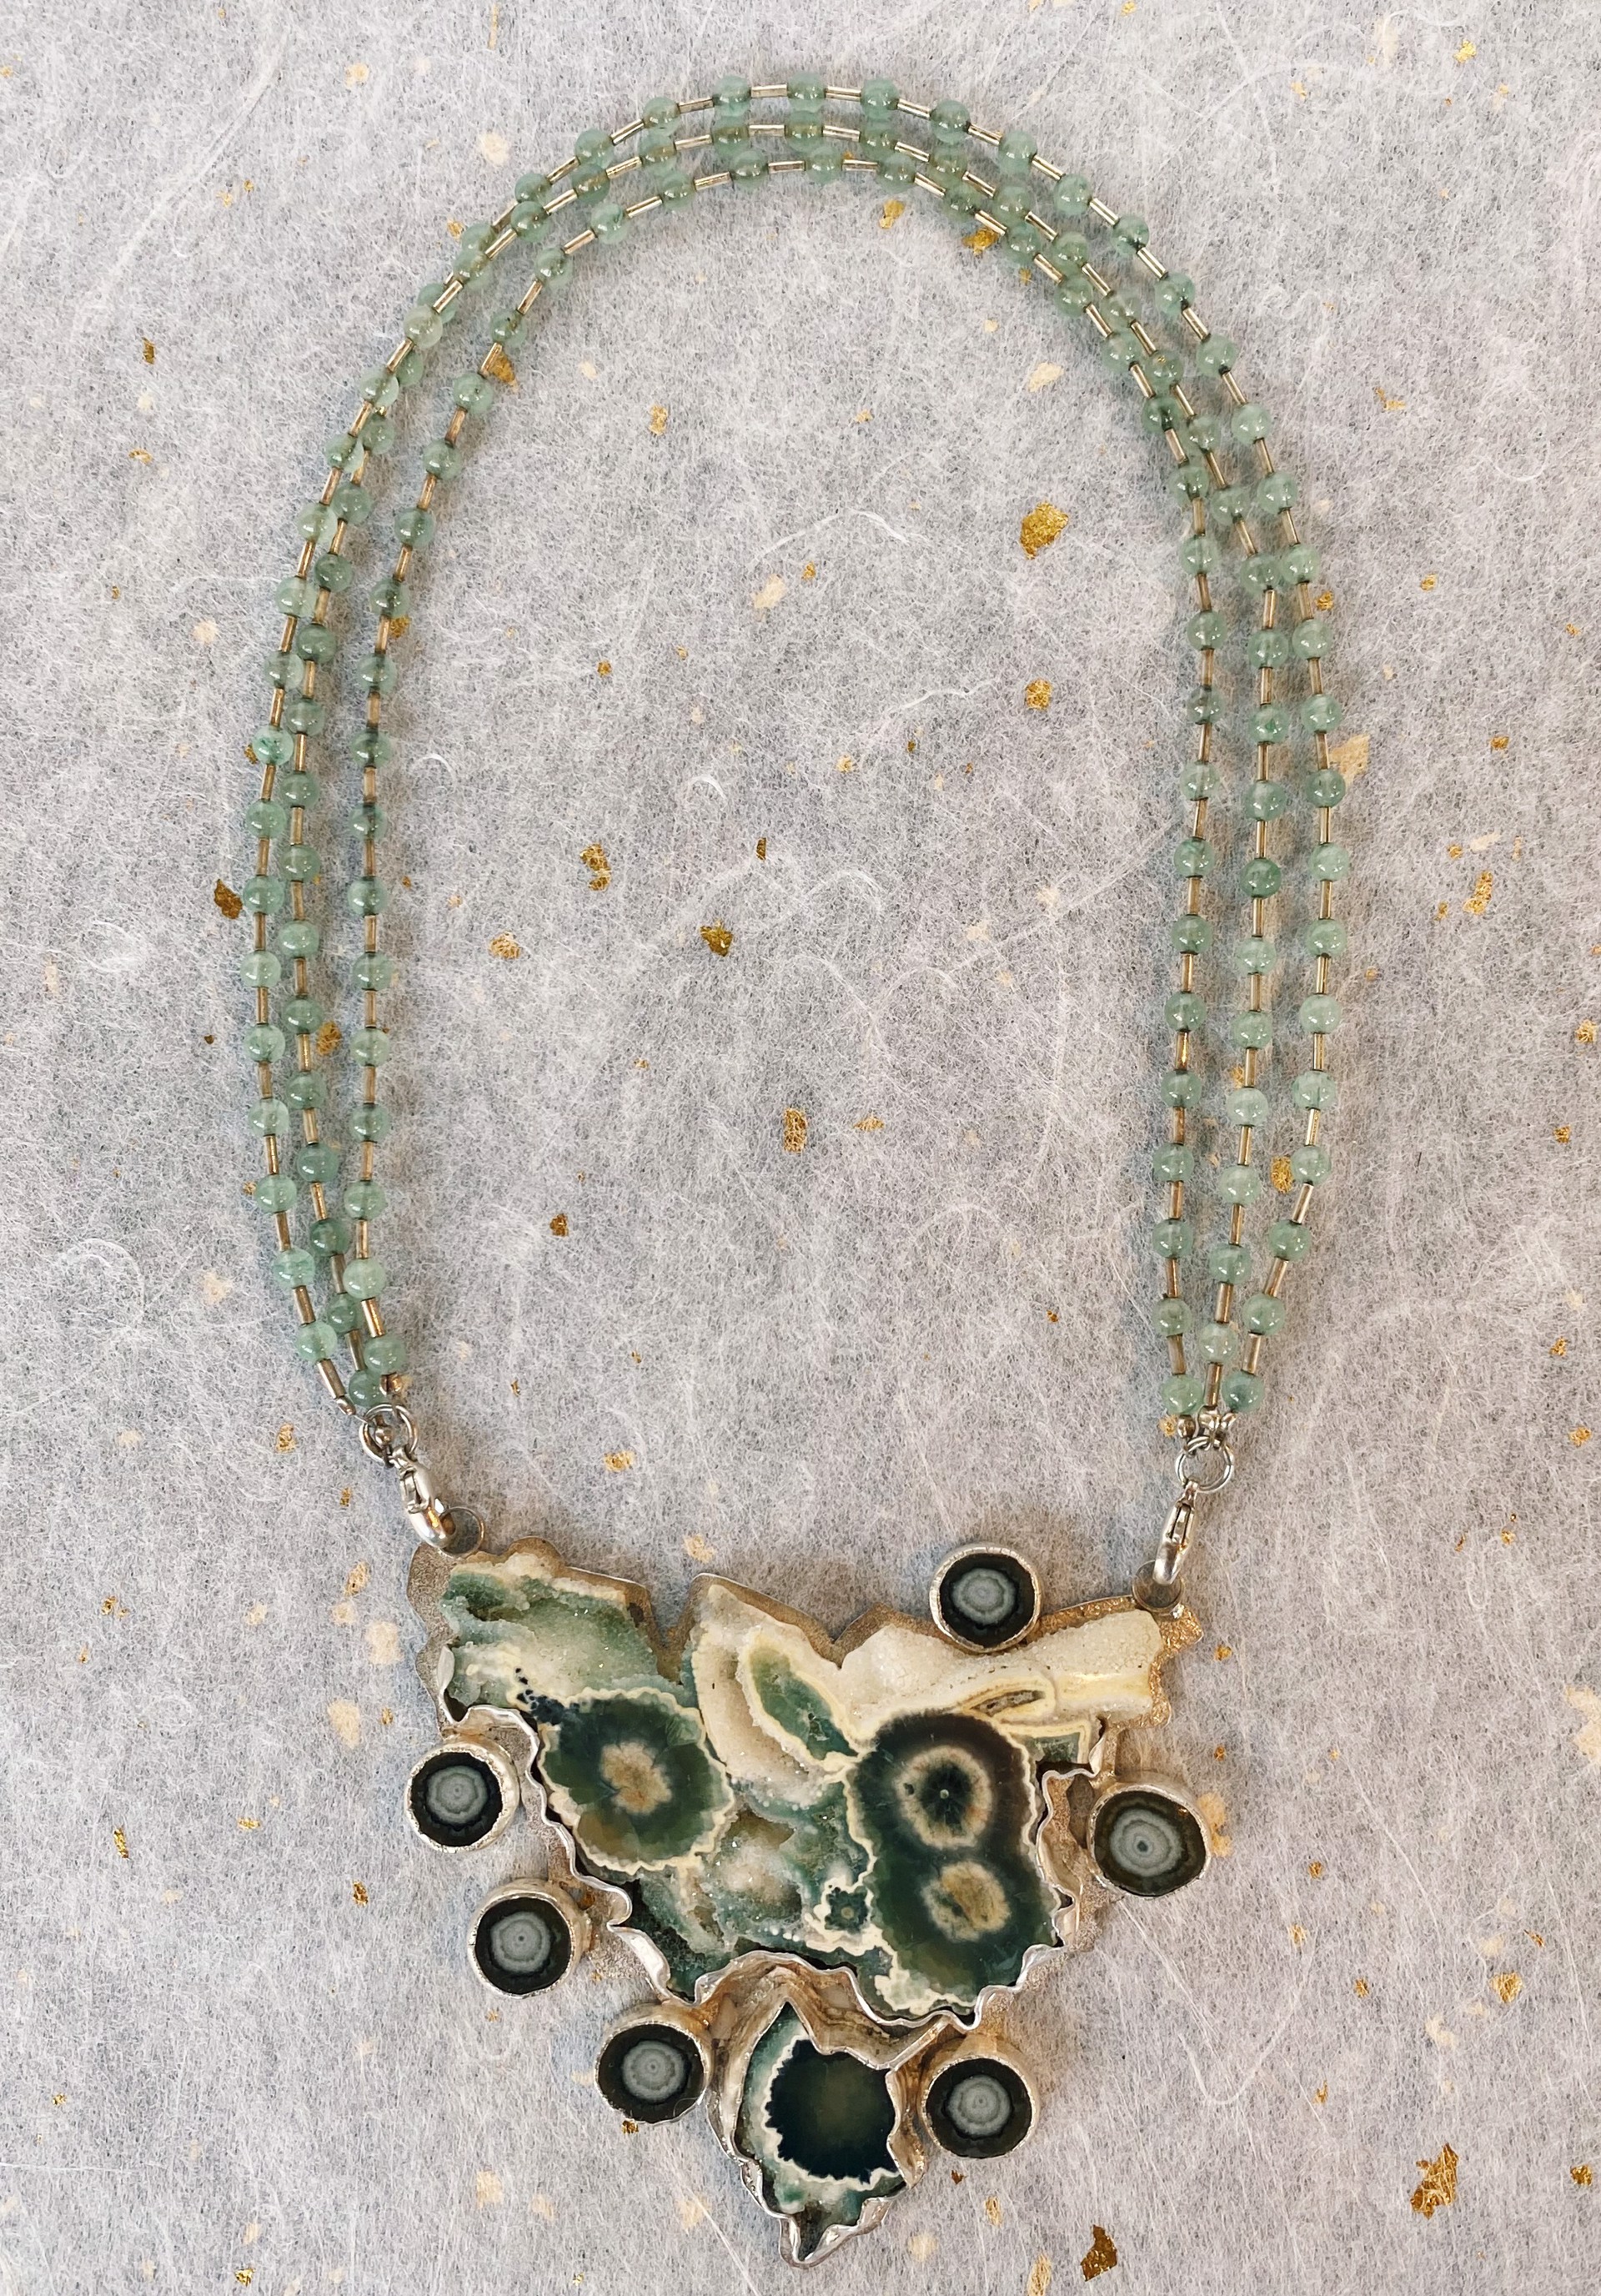 Necklace #6 by Marilynn Nicholson